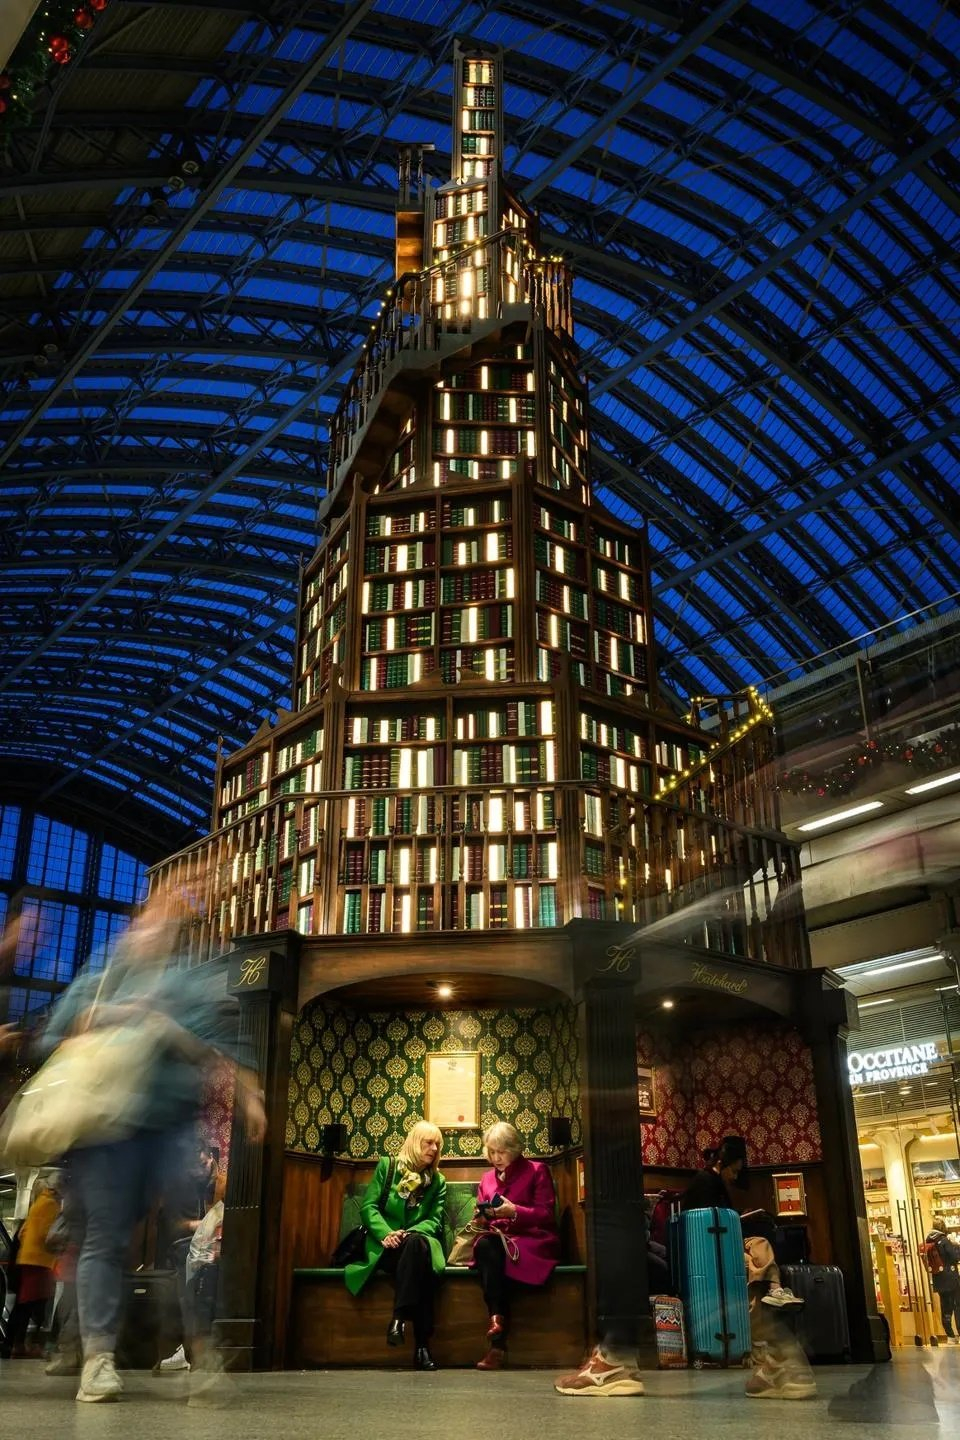 Một kệ sách là những cuốn sách bản sao được tạo thành cây thông Noel thật lớn ở Saint Pancras, một nhà ga ở Luân Đôn – Anh quốc. Đây là cây Noel được chọn là sáng tạo nhất.